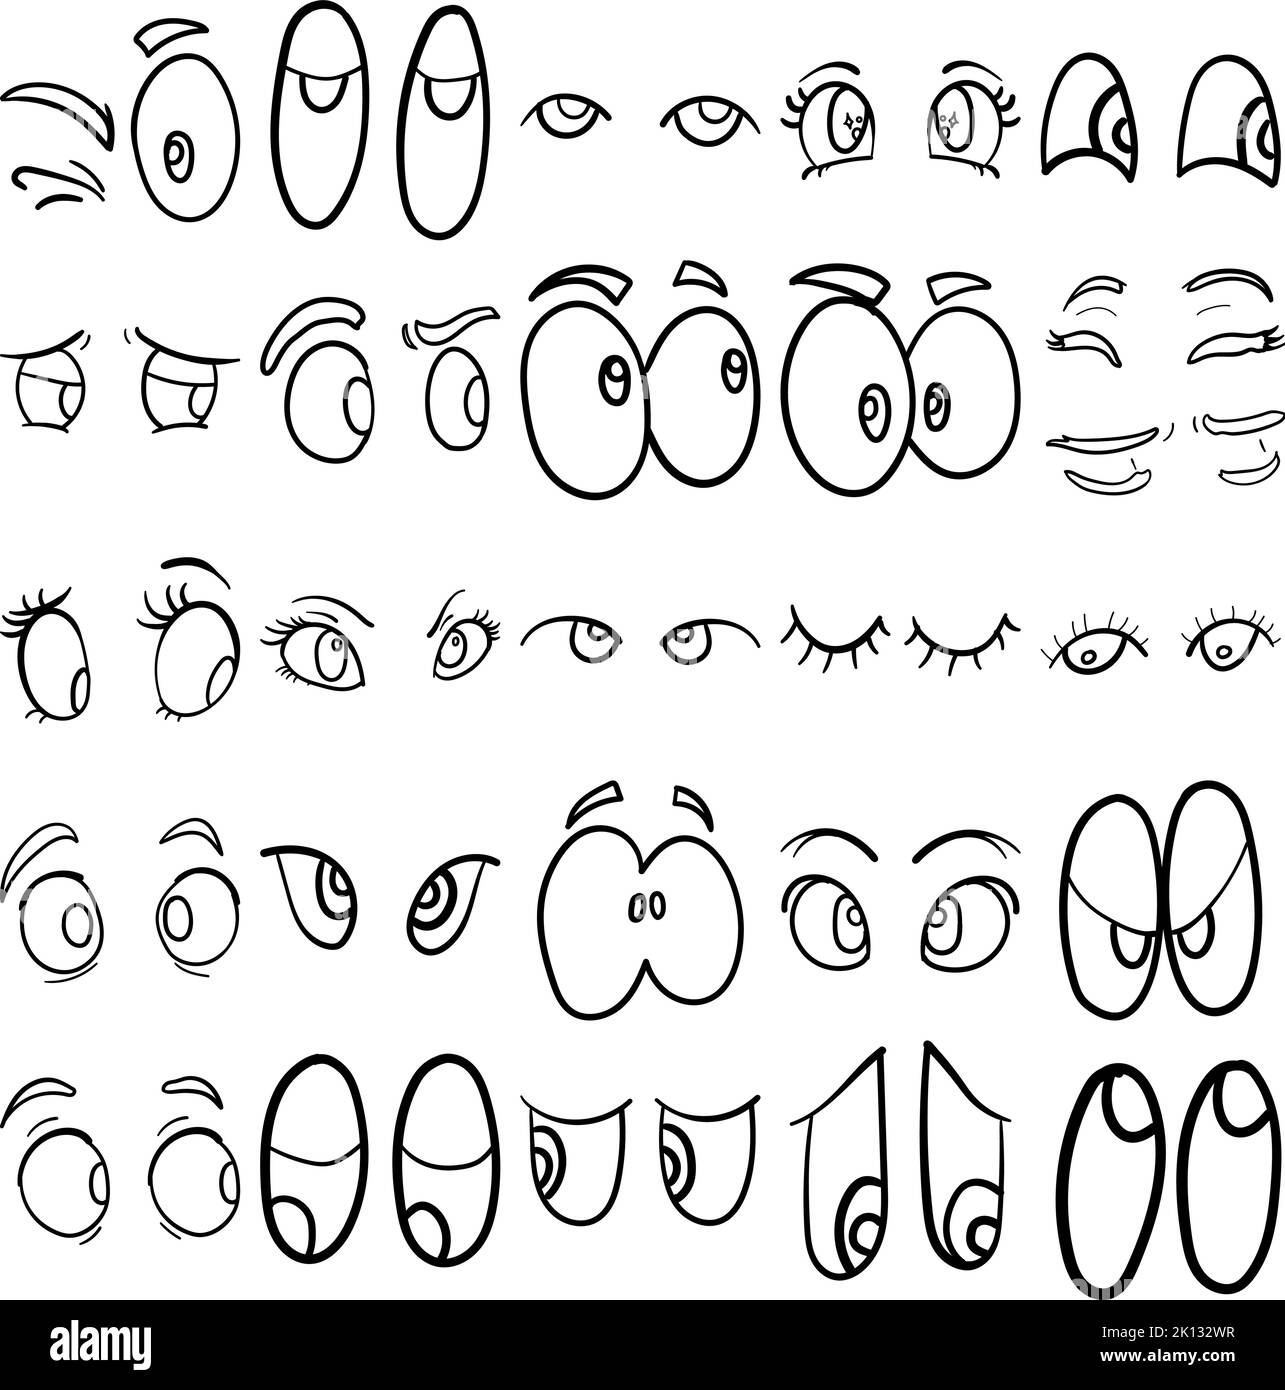 Eyes dessin main Doodle Line Art Outline Set contenant les yeux, l'optique, l'expression des yeux, les yeux langage corporel, la recherche, En regardant vers le bas, en regardant latéralement Illustration de Vecteur